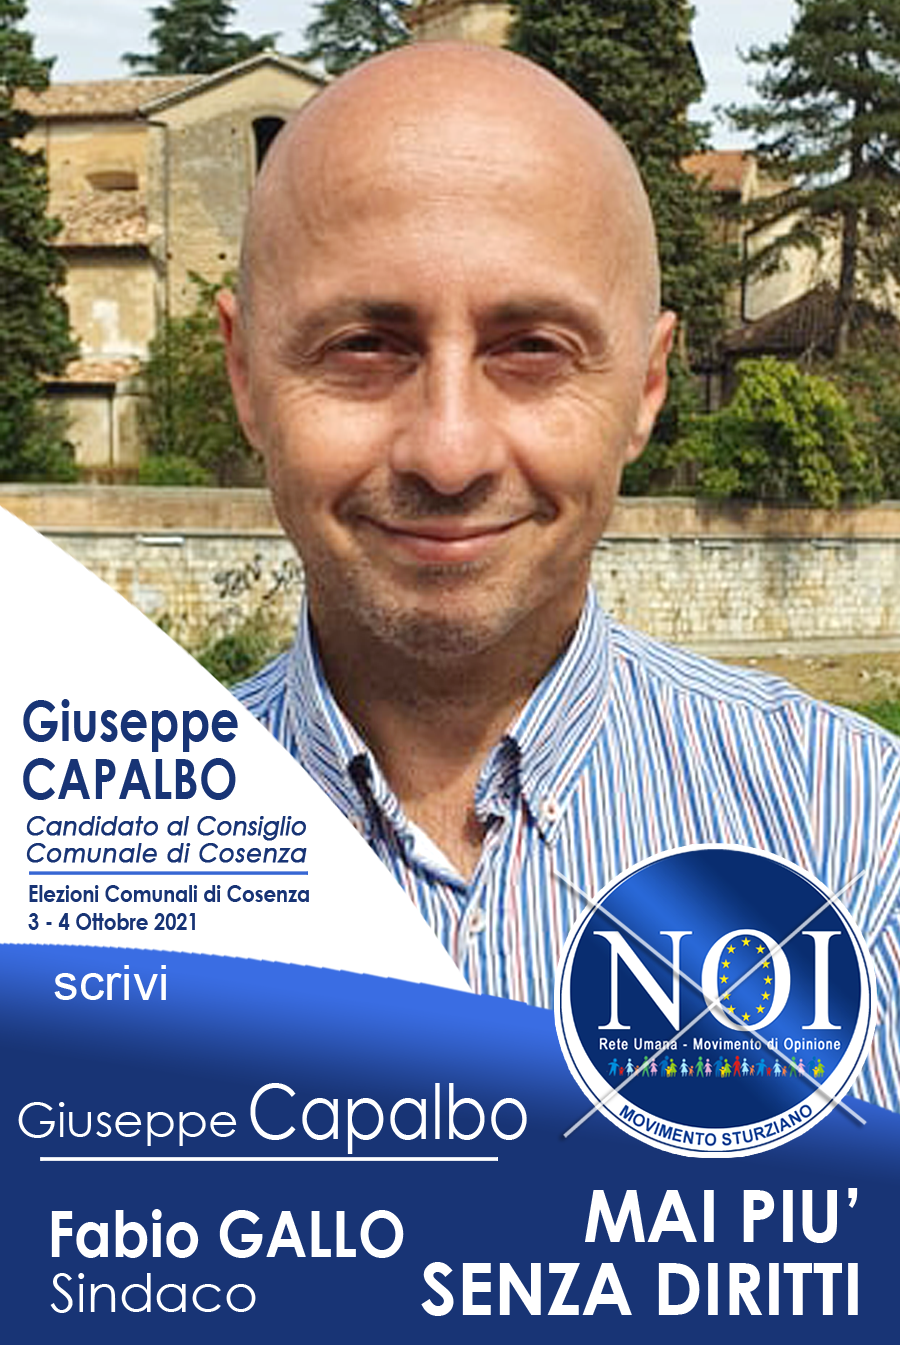 Giuseppe Capalbo Movimento NOI